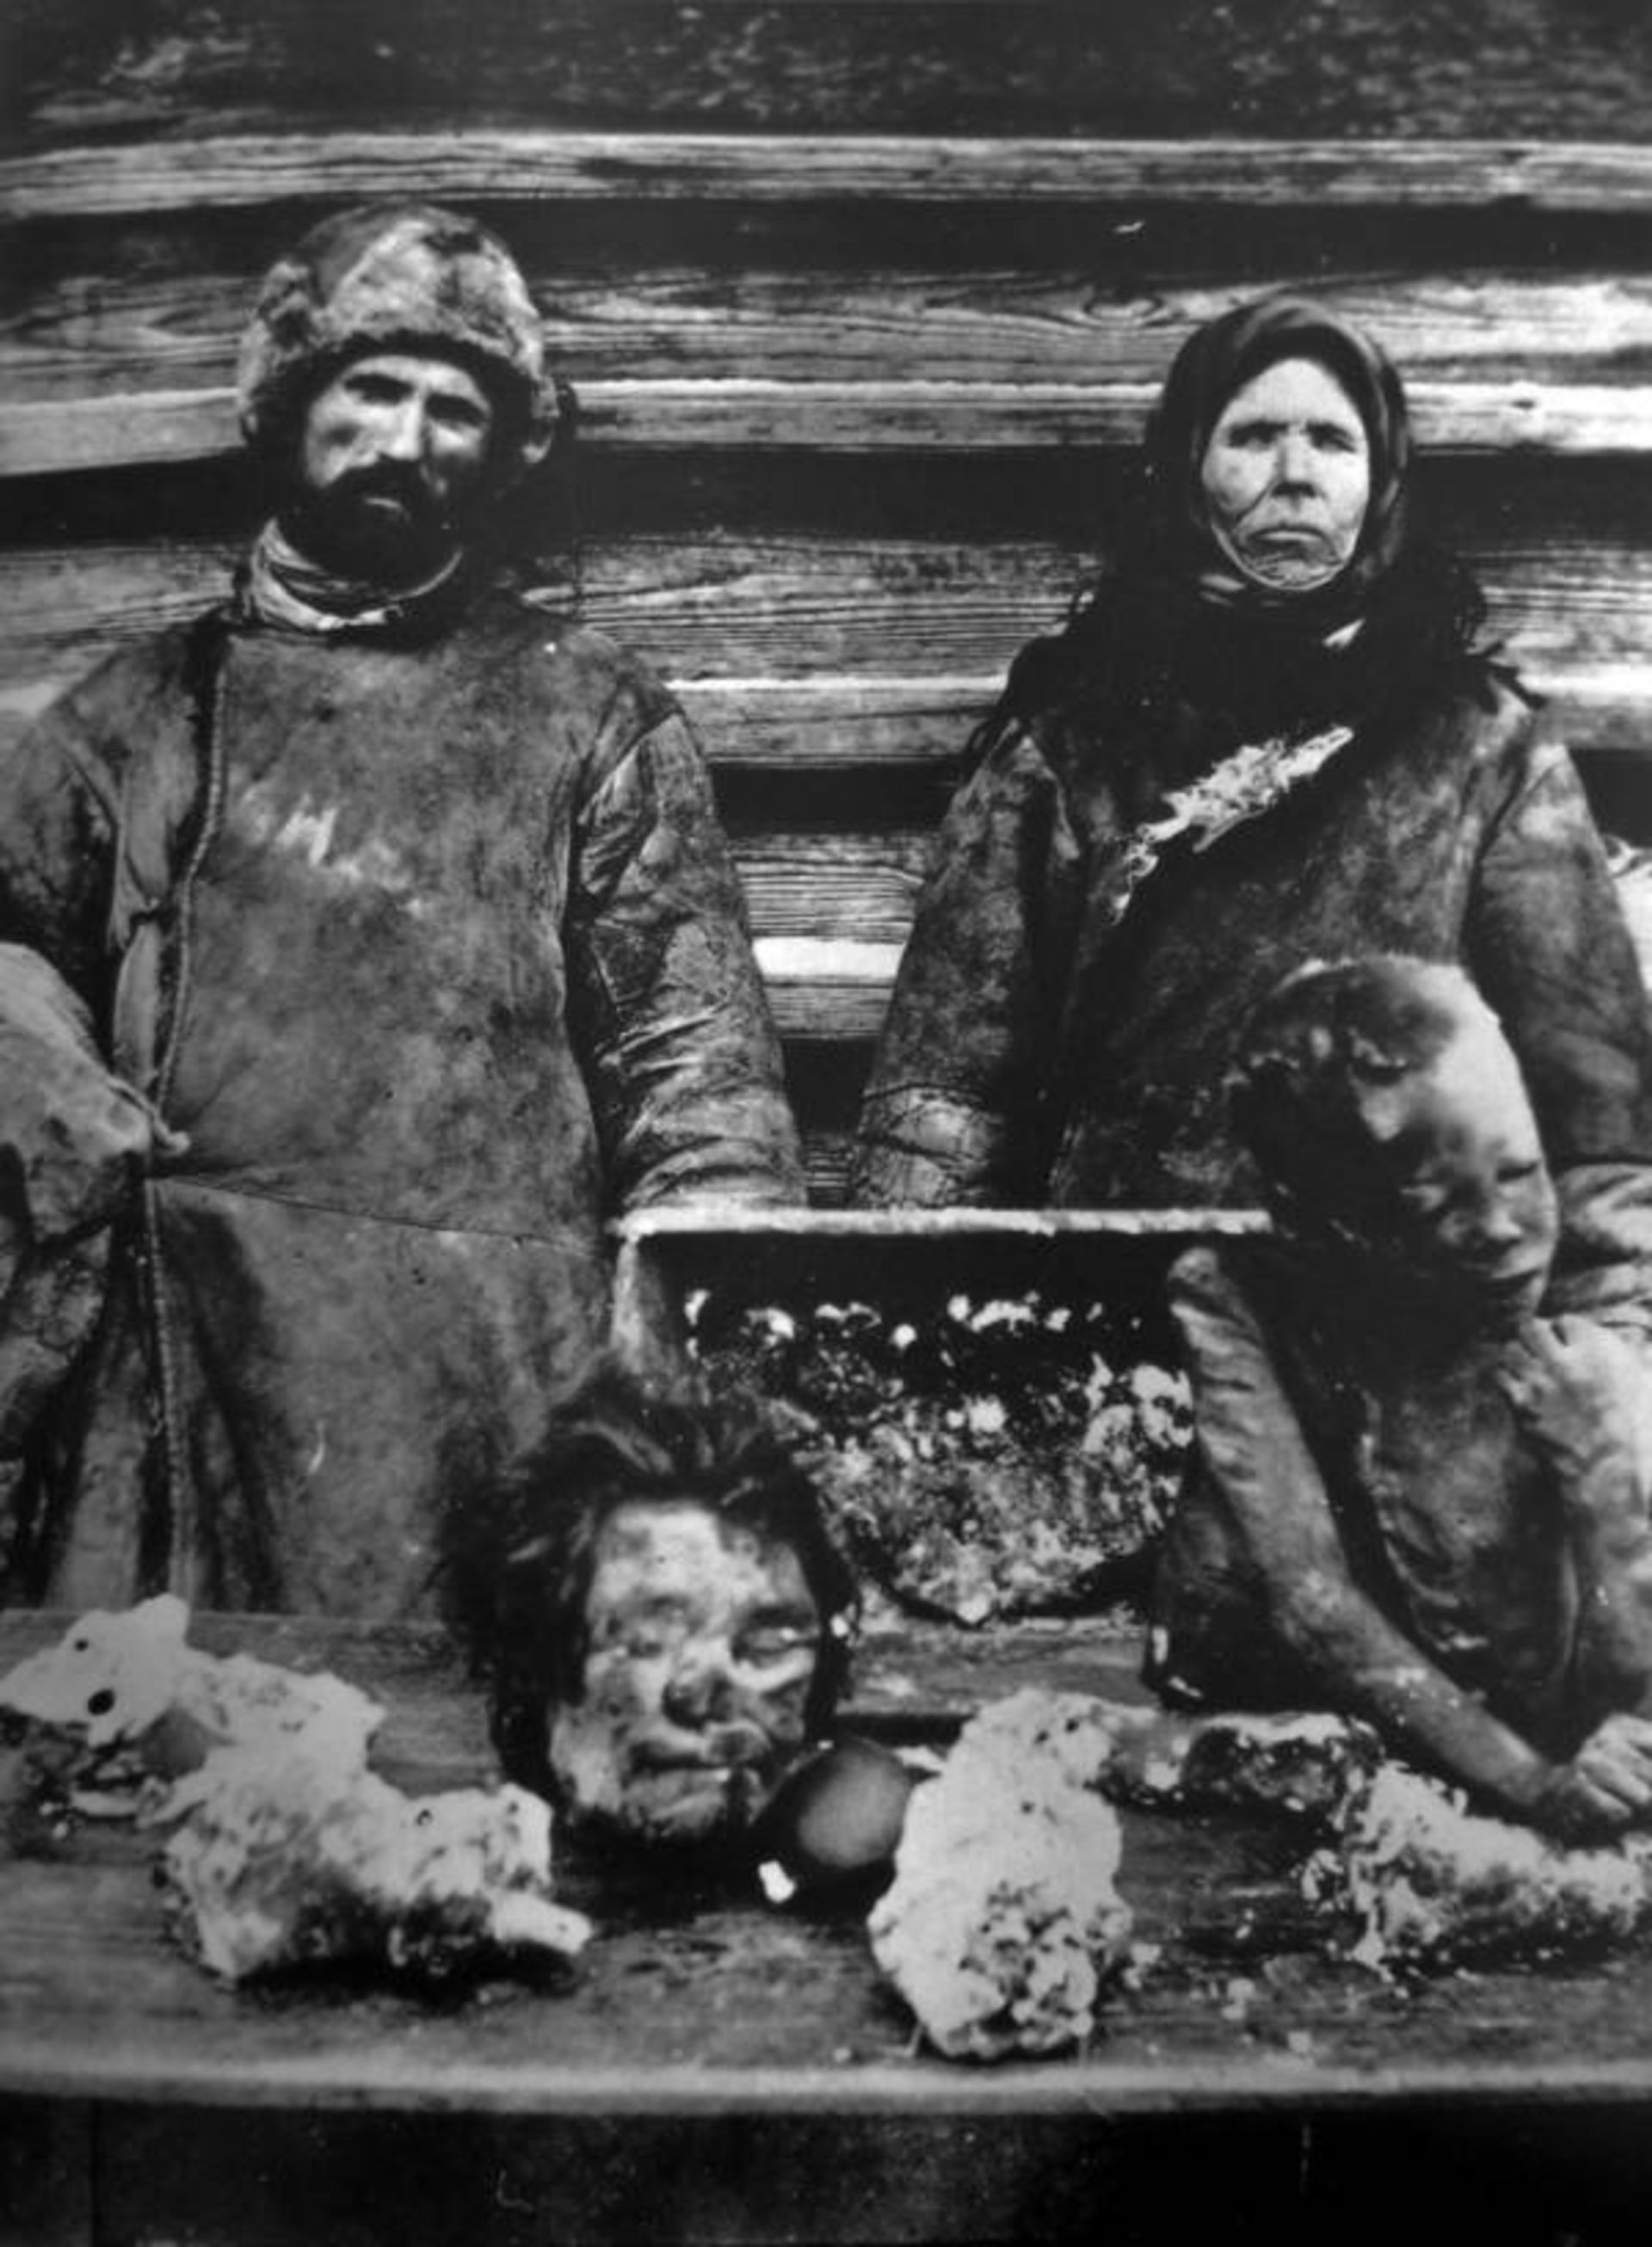 فروشندگان اعضای بدن انسان در دوران قحطی سال ۱۹۲۱ روسیه